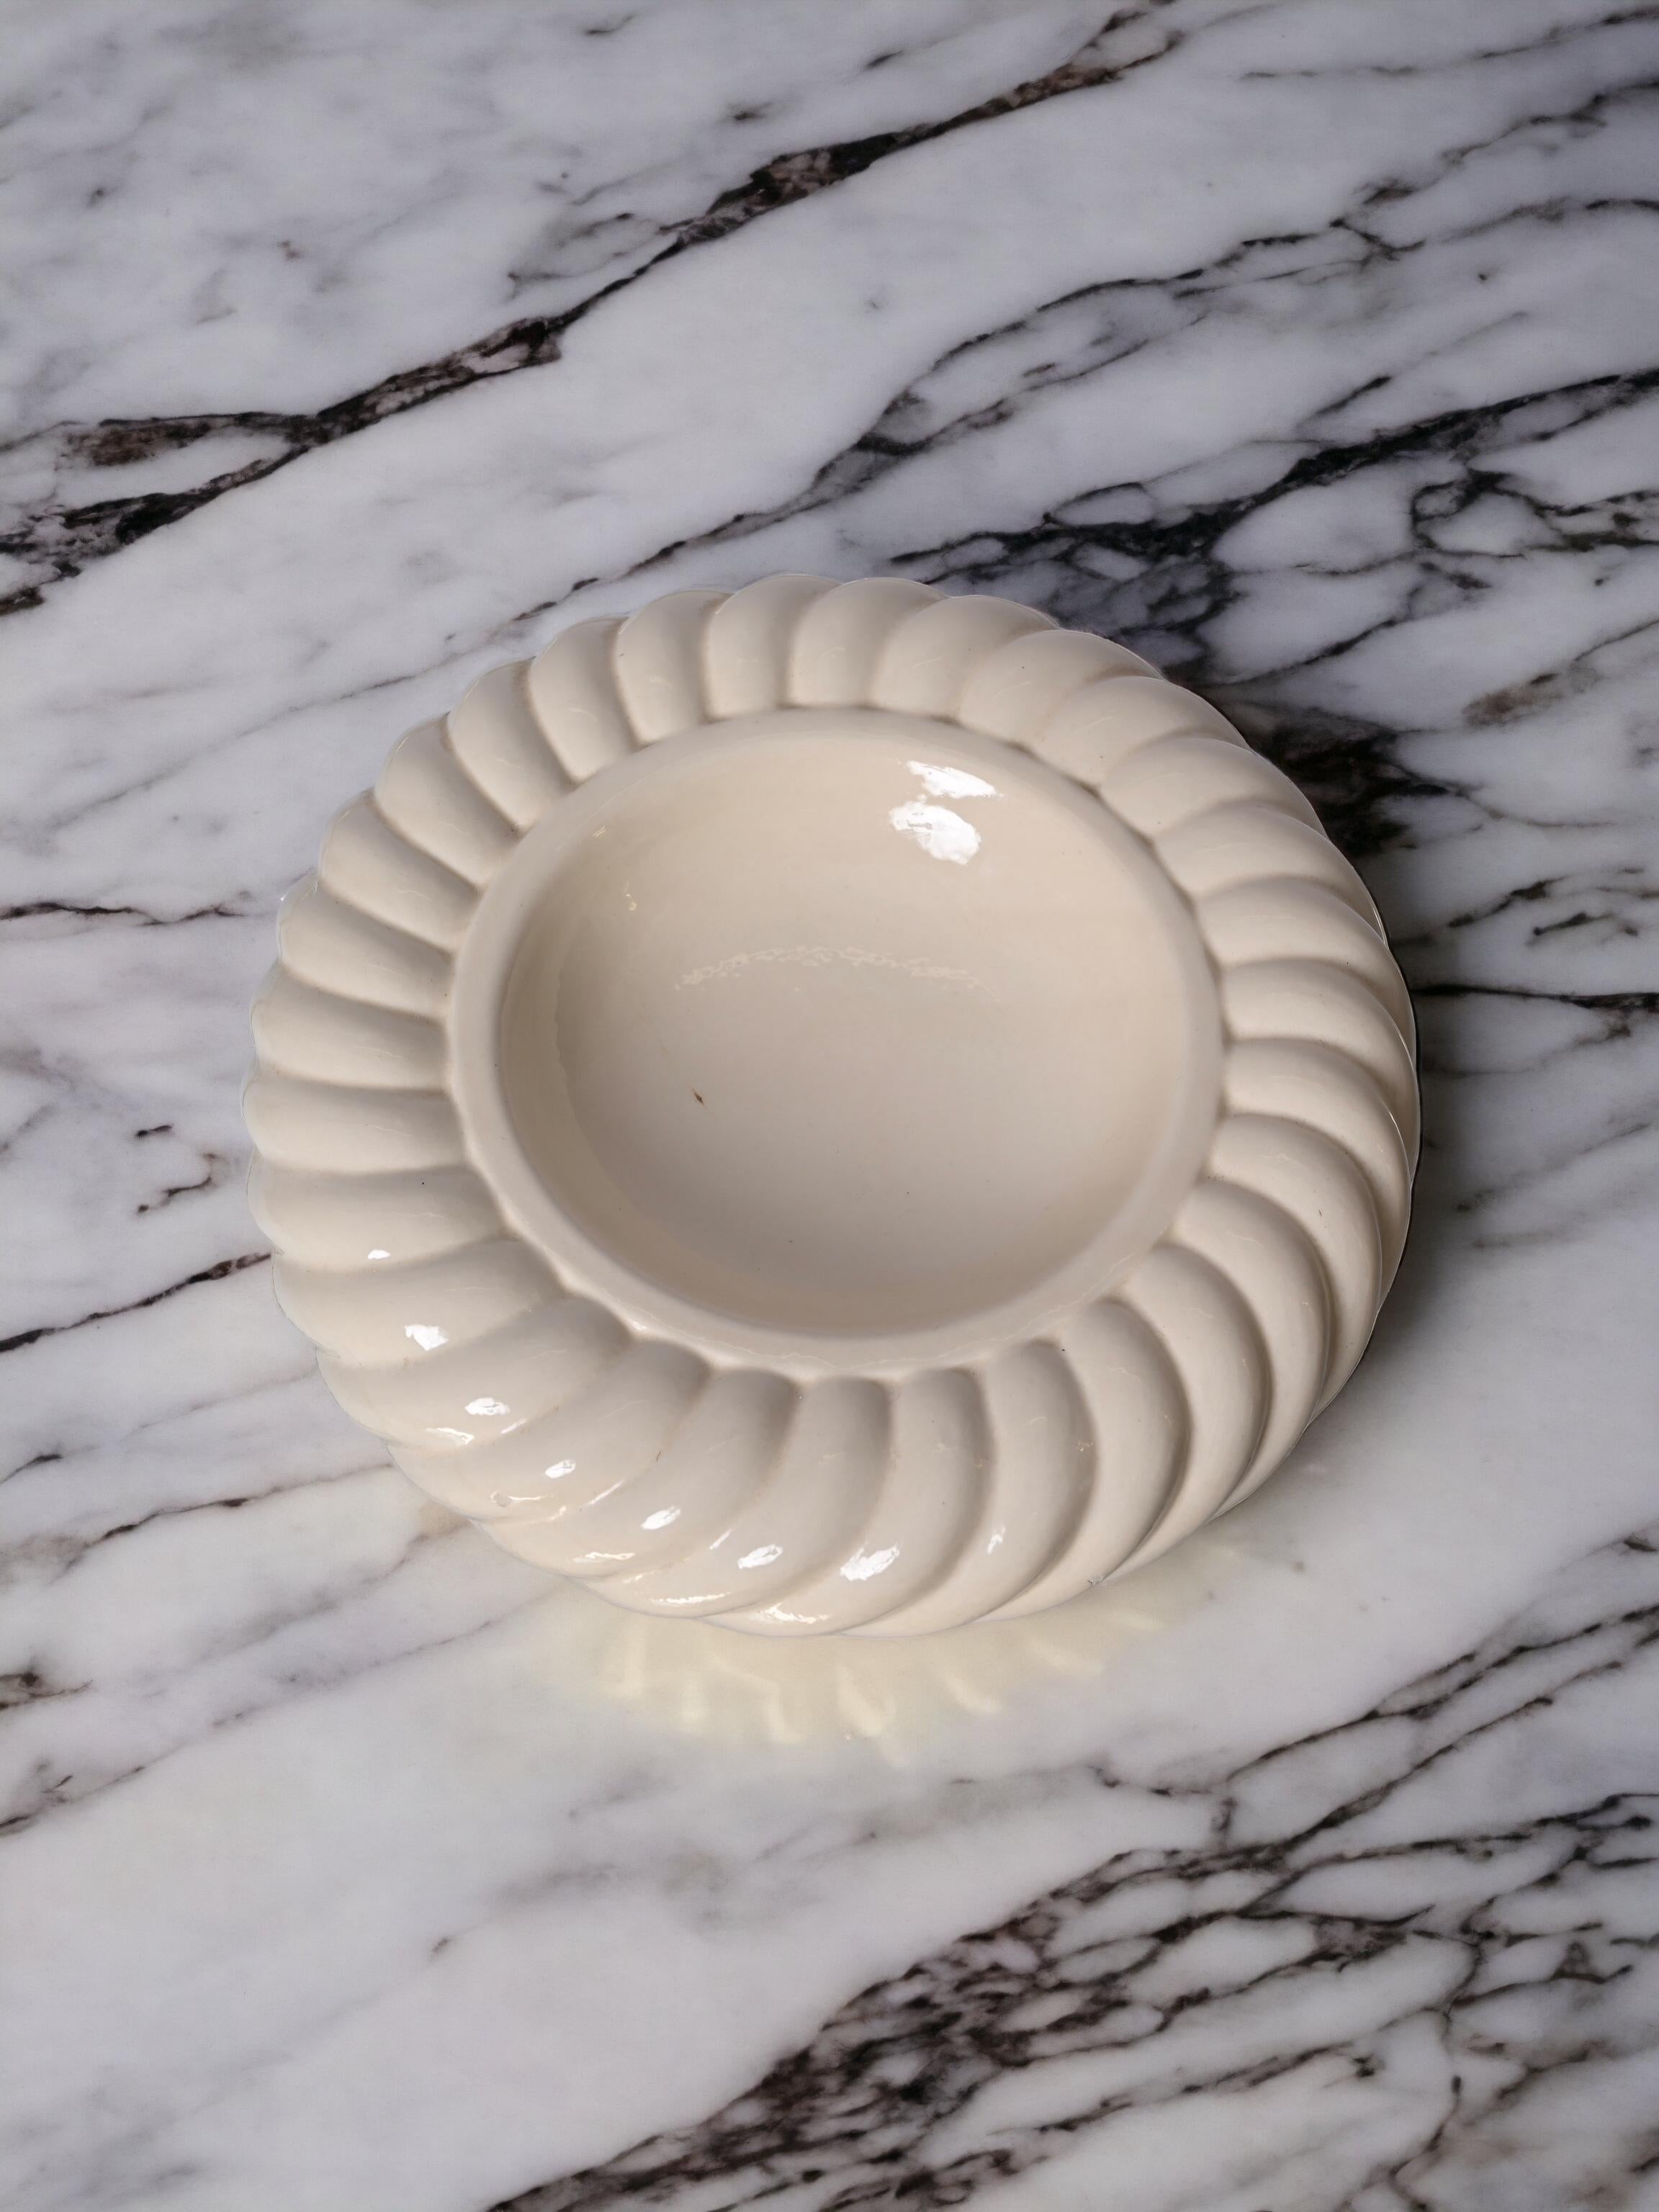 Unglaublich Mid-Century Modern weißer Keramik-Aschenbecher. Dieses fantastische Stück wurde von Tommaso Barbi entworfen und von B. Ceramiche in den späten 1960er Jahren in Italien hergestellt.

Der Markenstempel des Herstellers befindet sich auf der